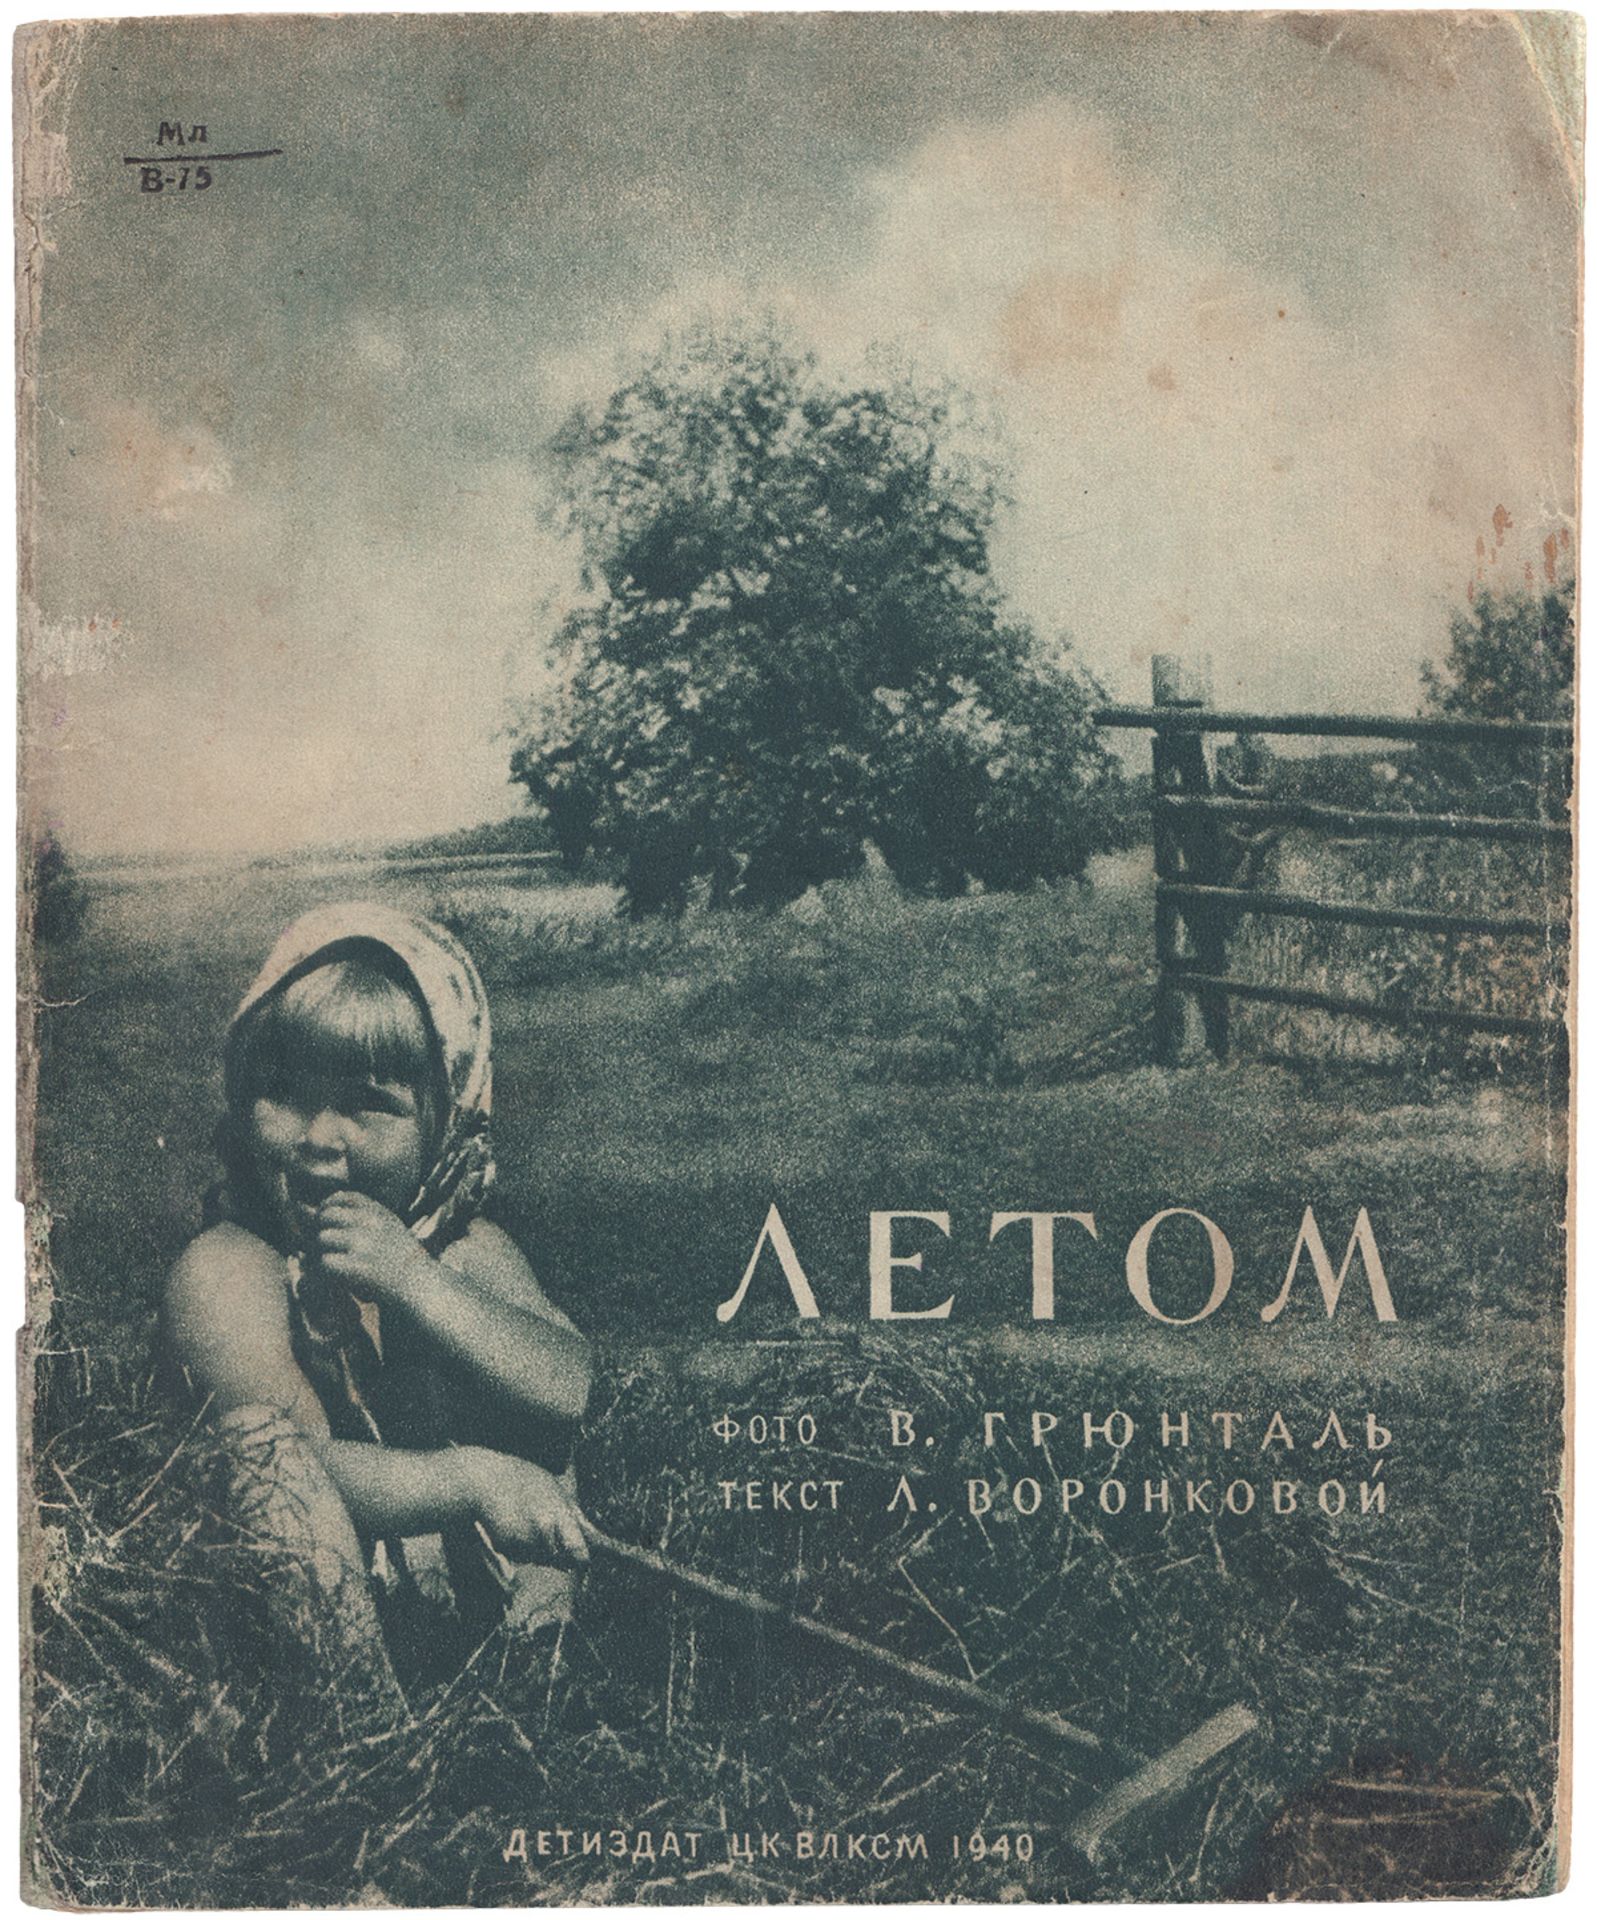 [Soviet] Voronkova, L.F. In The Summer [Stories] / Photo by V.Gruntale ; Text by V.Voronkova. â€“ Mo - Bild 2 aus 8